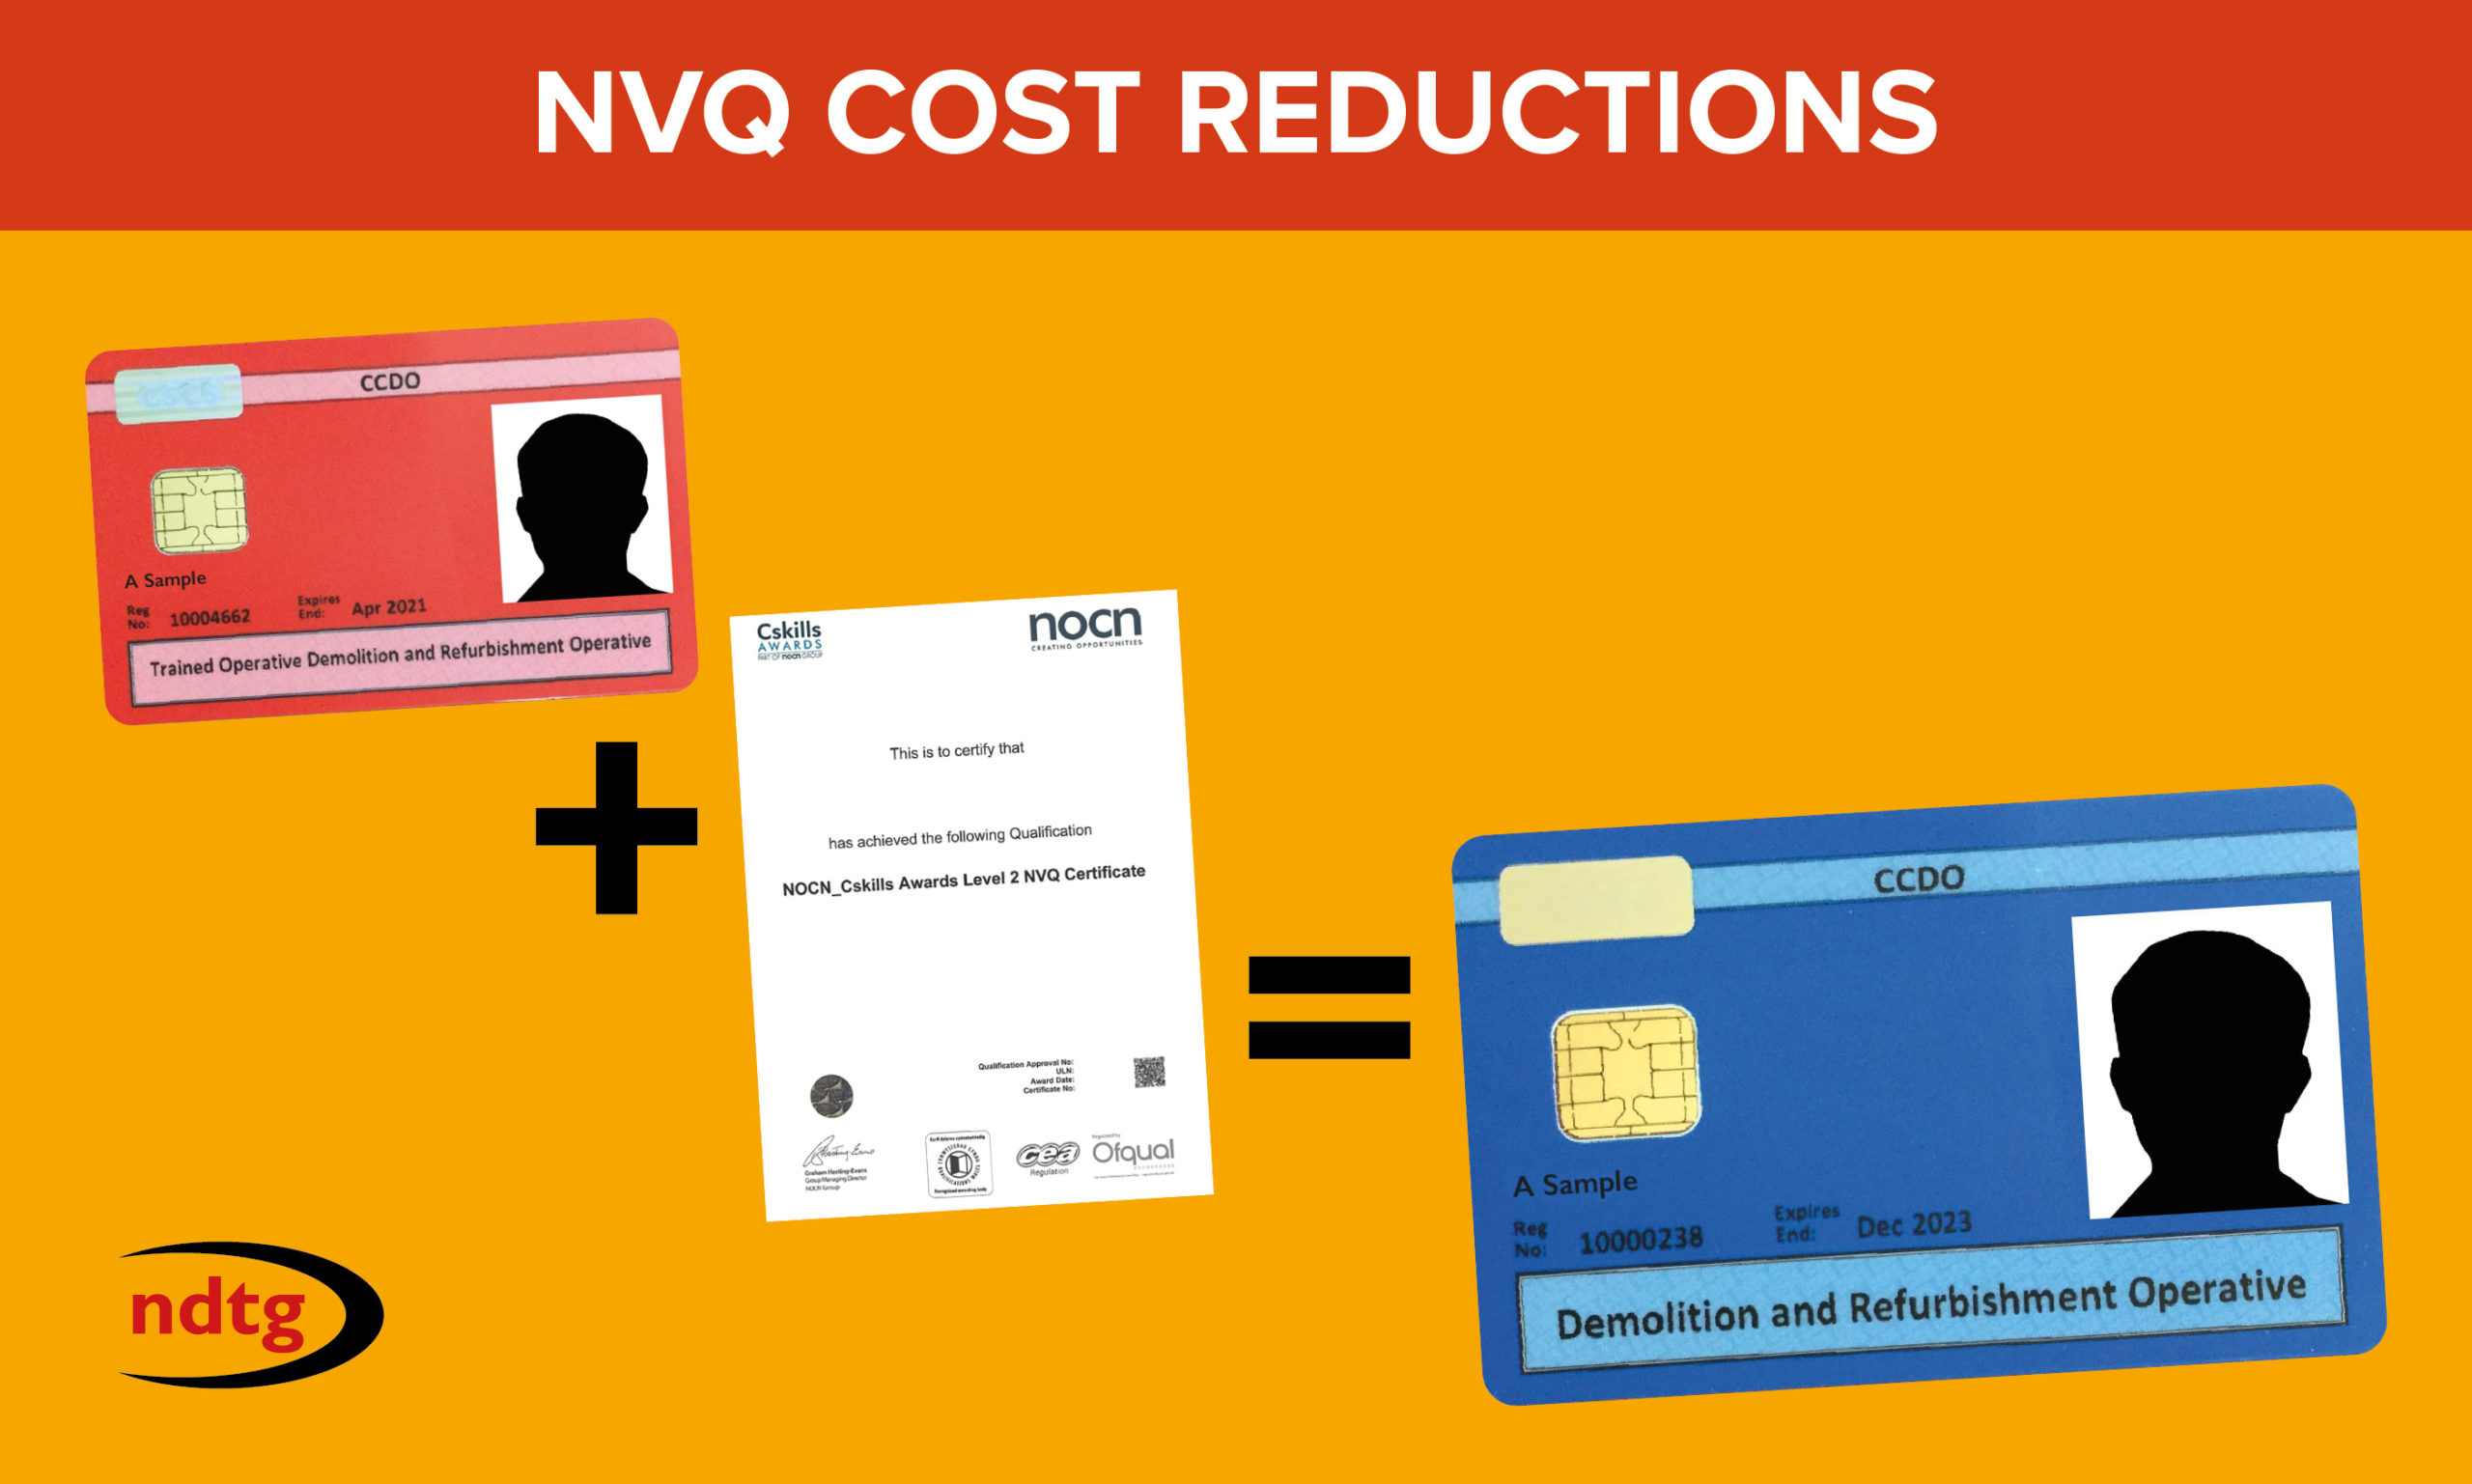 NDTG Drives NVQ Costs Down